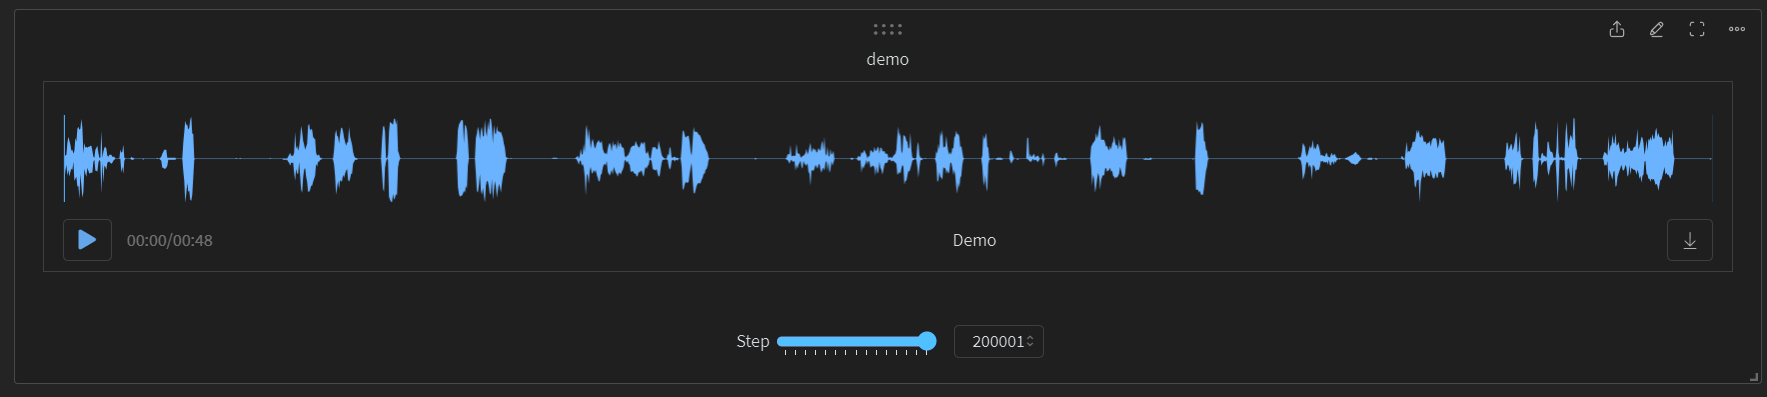 Screenshot of wandb showing a demo audio